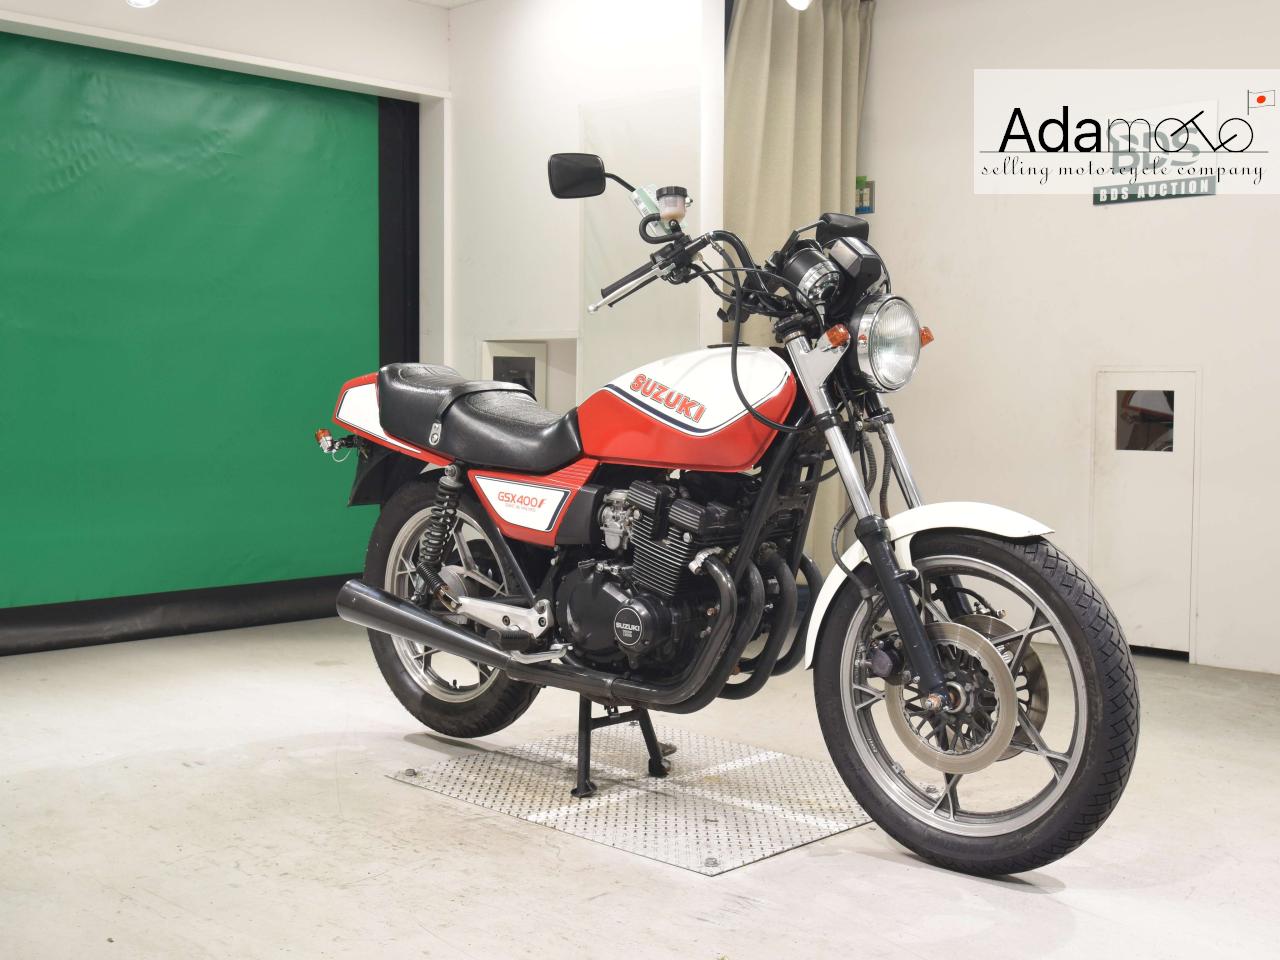 Suzuki GSX400F - Adamoto - Motorcycles from Japan